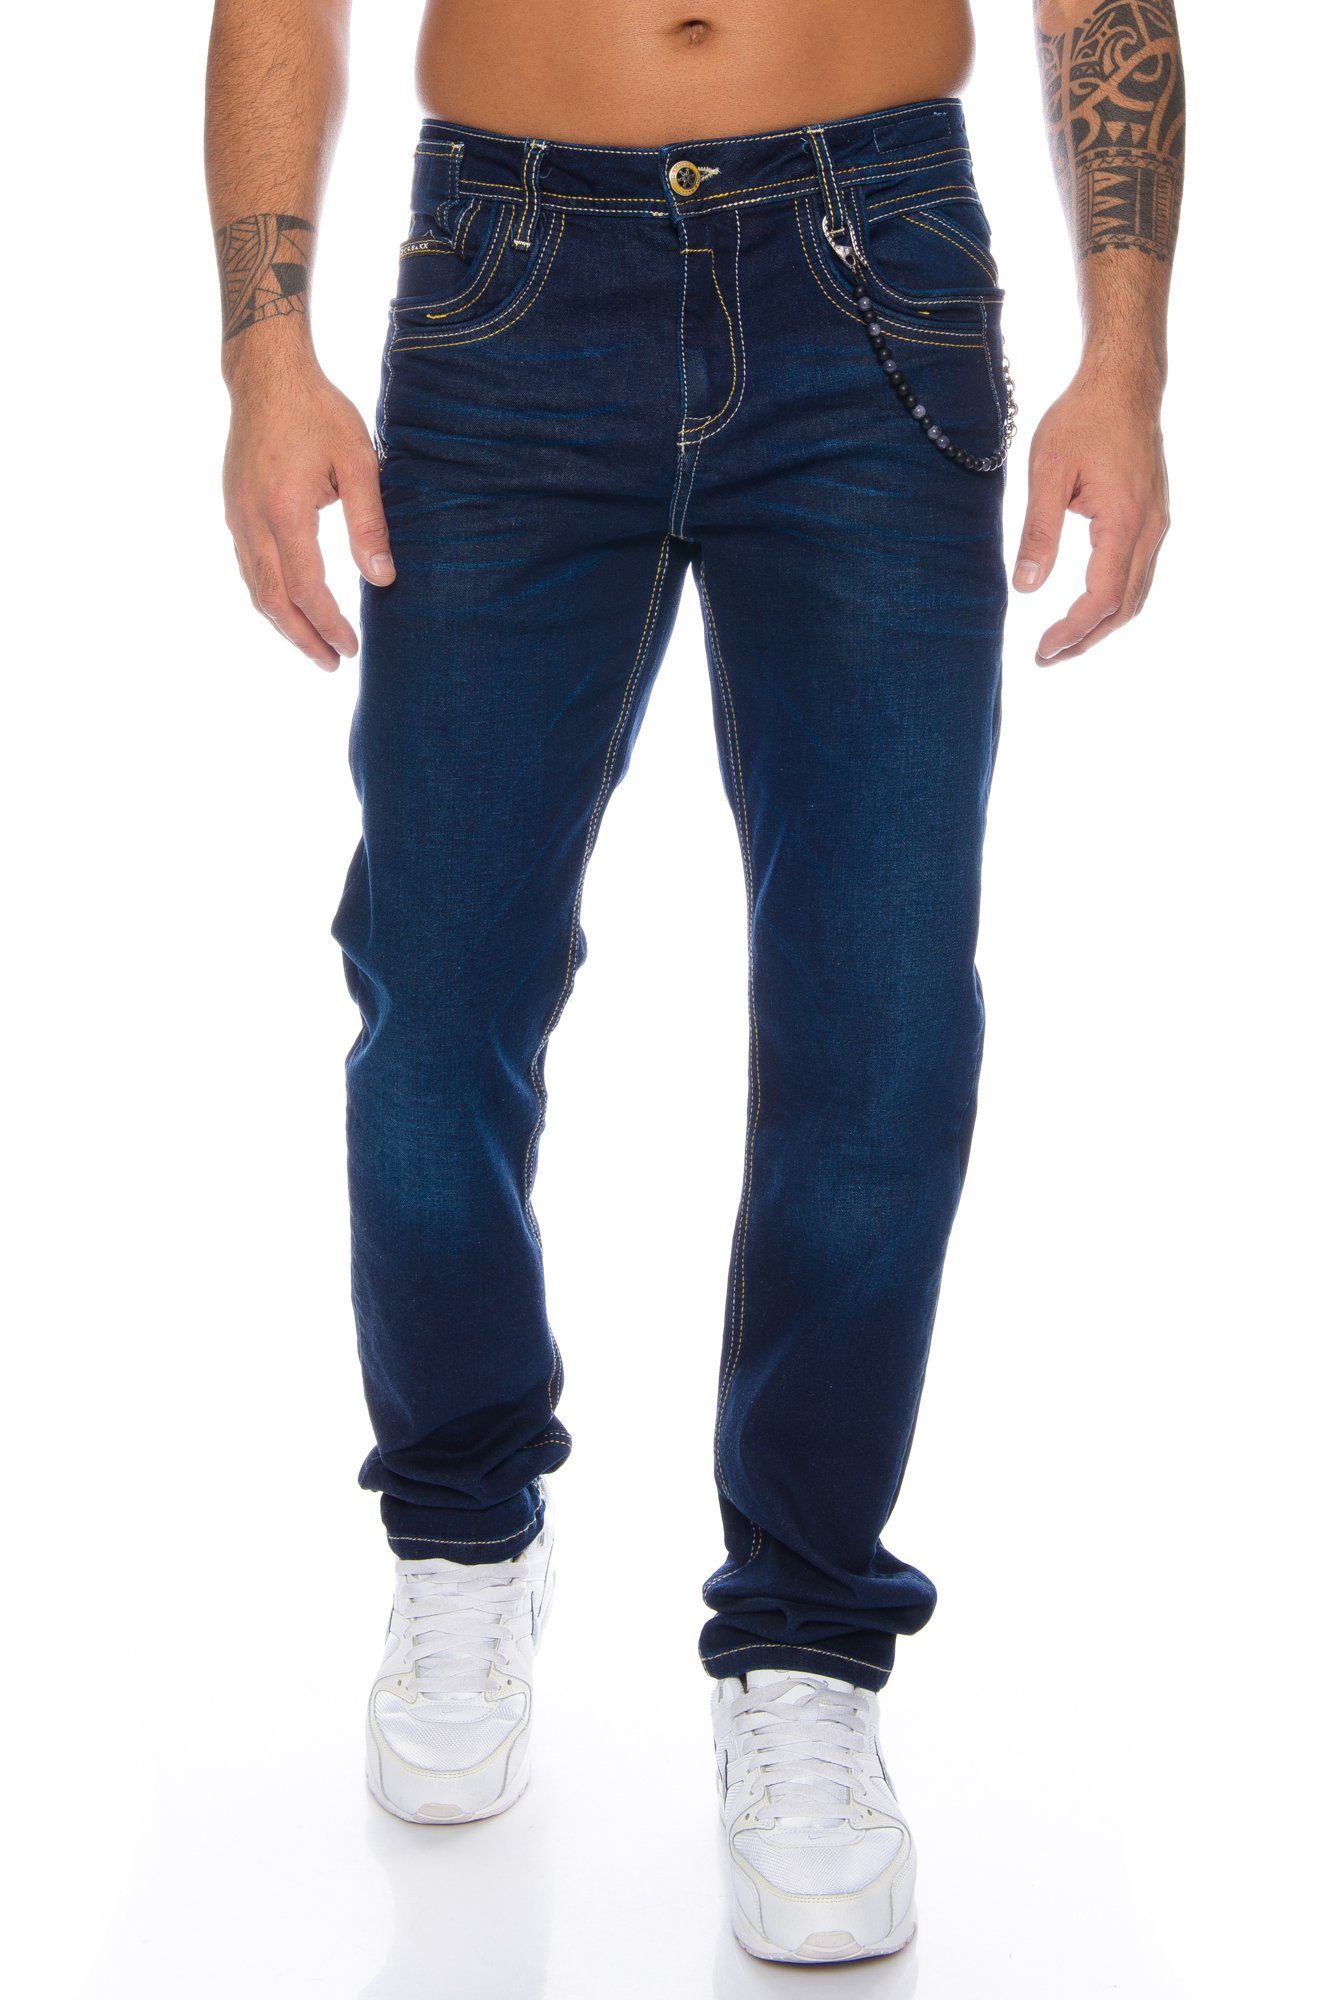 Cipo & Baxx Regular-fit-Jeans Herren Jeans Hose mit stylischem Design und Accessoire Kette Dezente Kontrastnähte und hochwertiger Tragekomfort | Stretchjeans